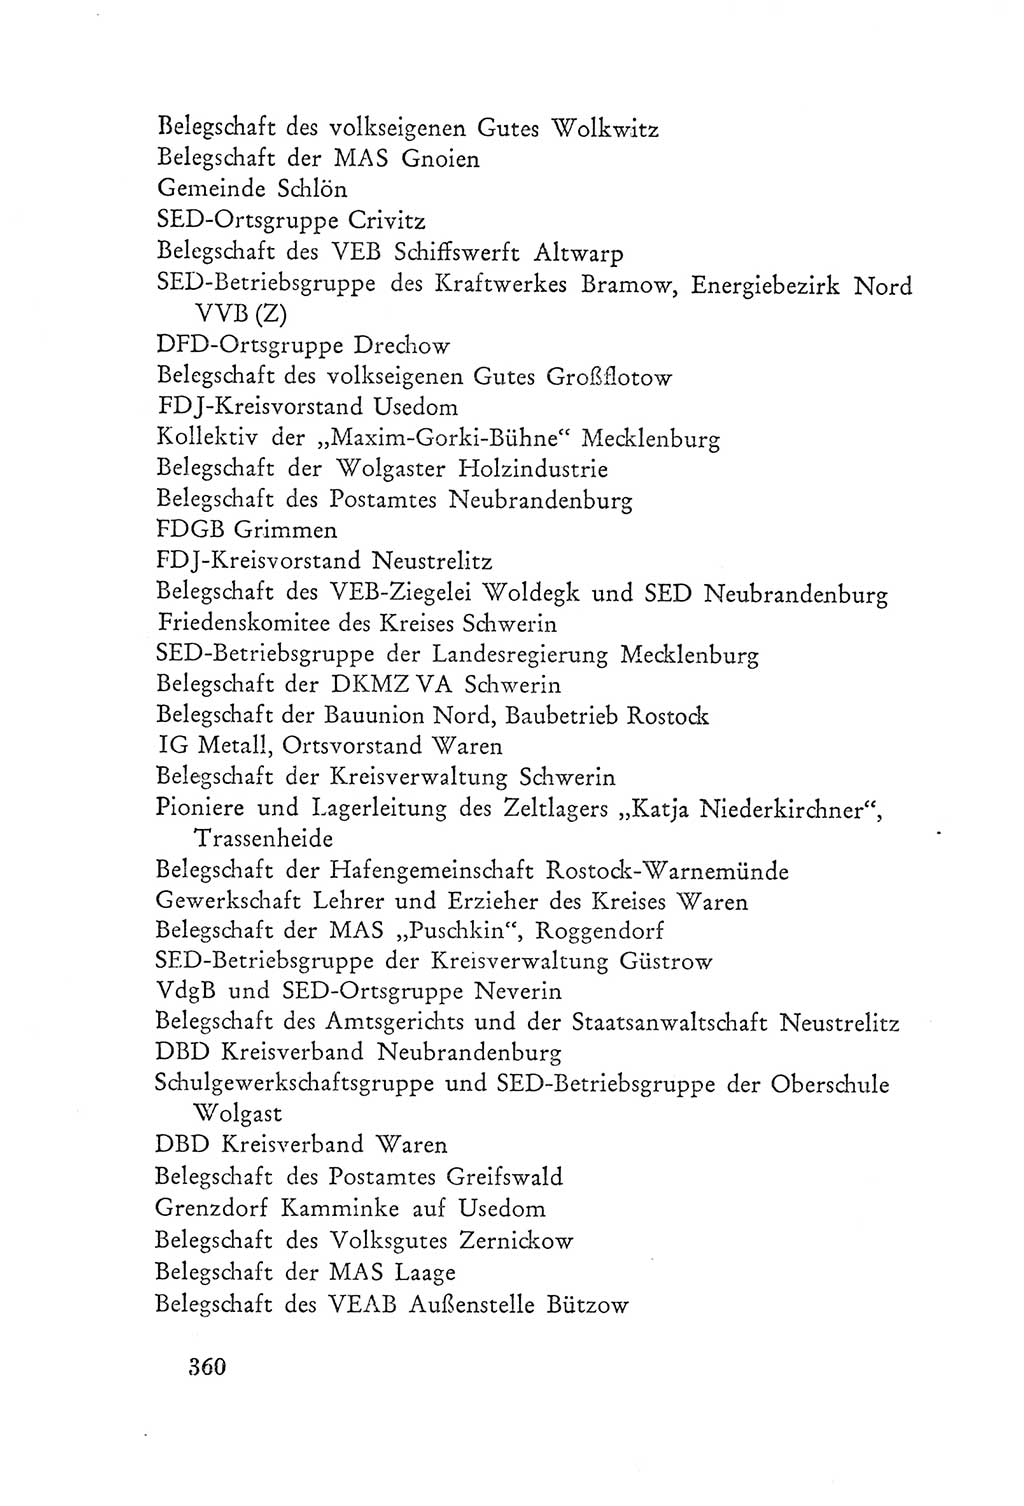 Protokoll der Verhandlungen des Ⅲ. Parteitages der Sozialistischen Einheitspartei Deutschlands (SED) [Deutsche Demokratische Republik (DDR)] 1950, Band 2, Seite 360 (Prot. Verh. Ⅲ. PT SED DDR 1950, Bd. 2, S. 360)